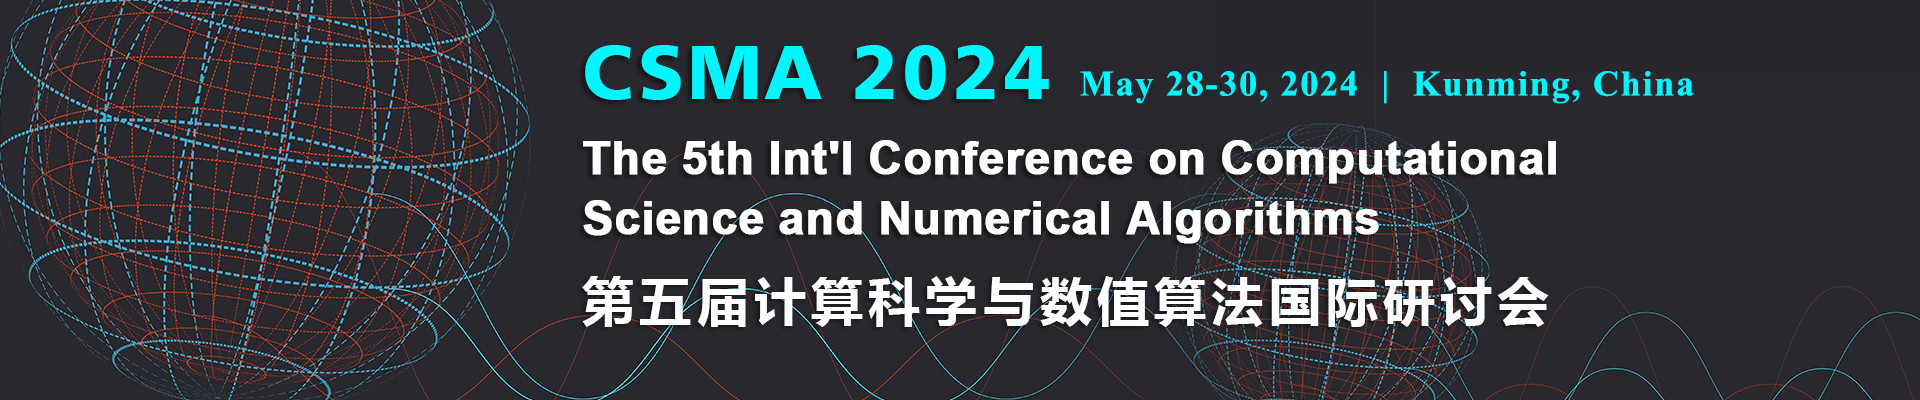 第五屆計算科學與數值算法國際研討會(CSMA 2024)